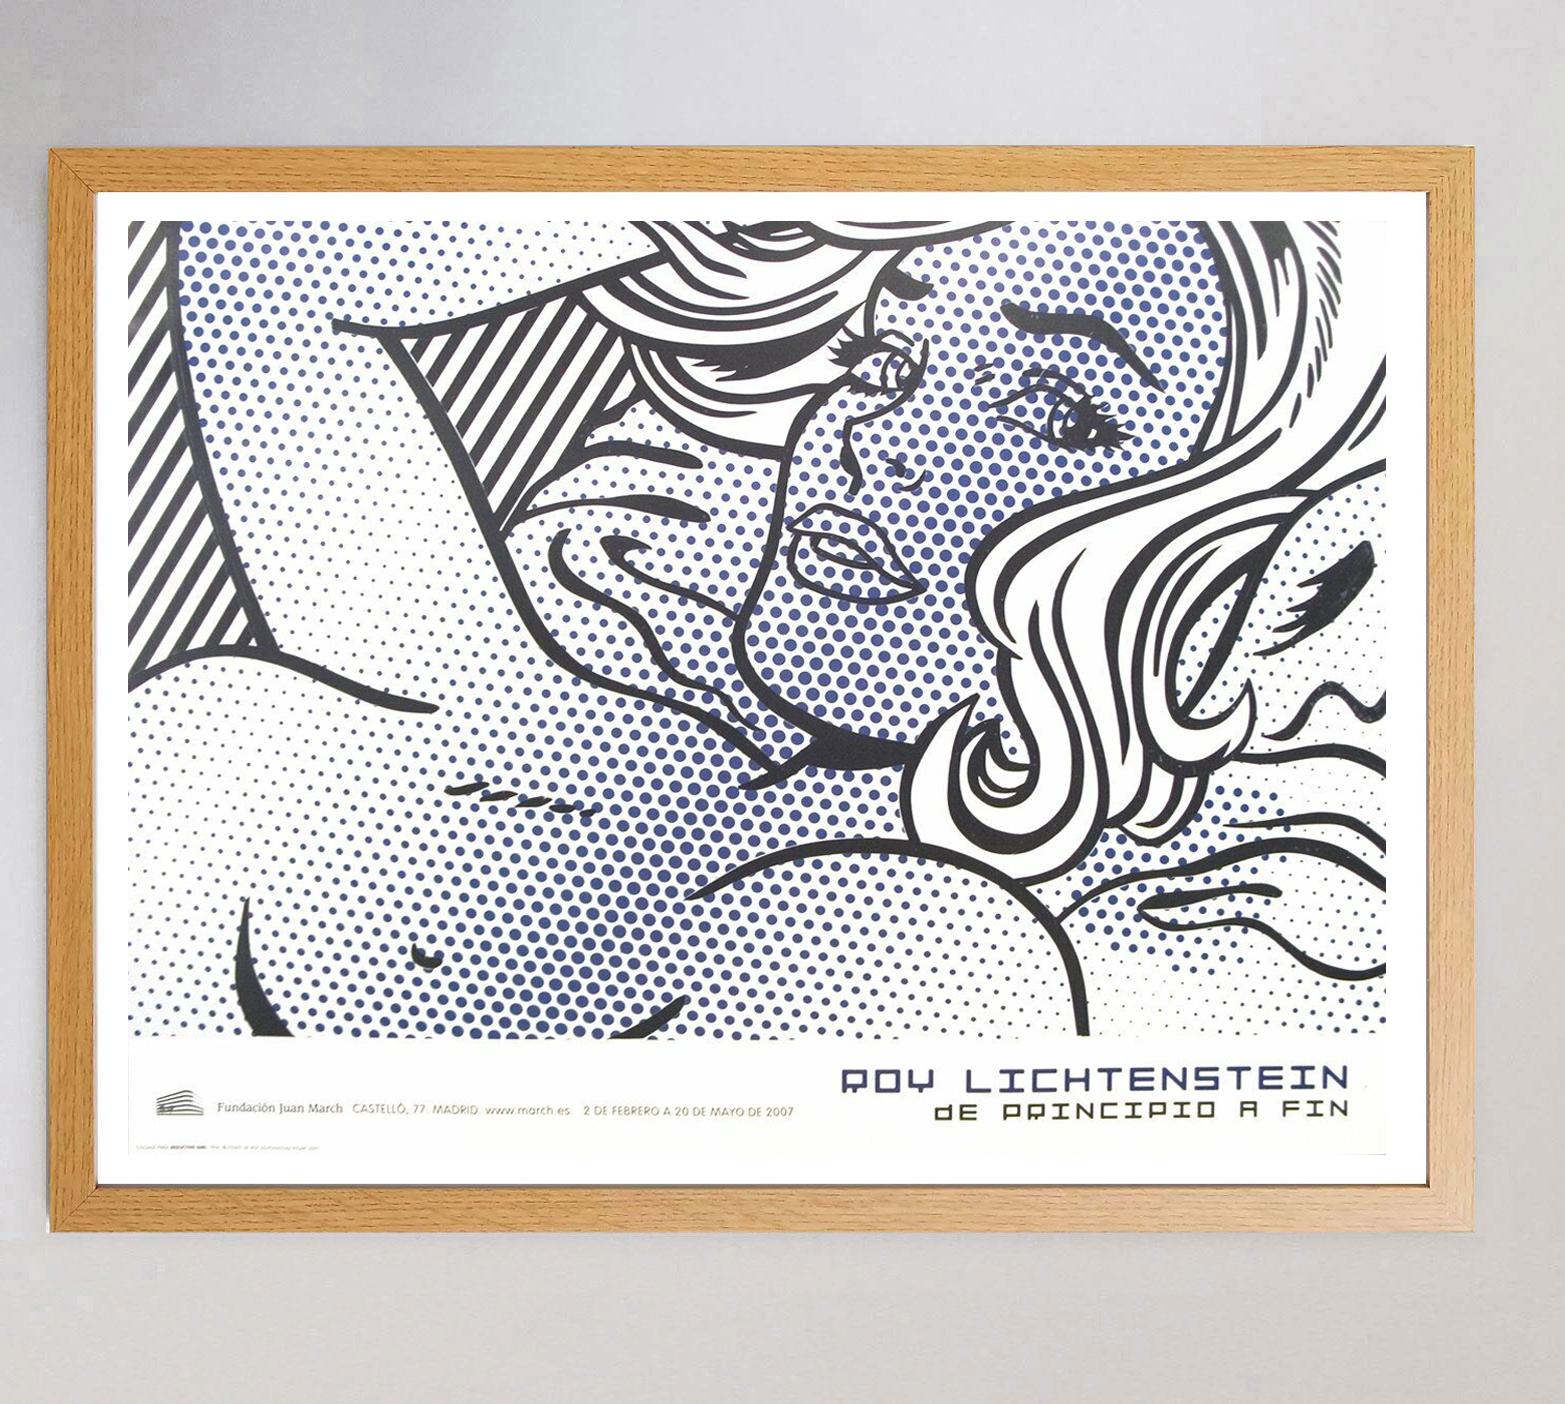 Spanish 2007 Roy Lichtenstein - Seductive Girl - Fundacion Juan March Original Poster